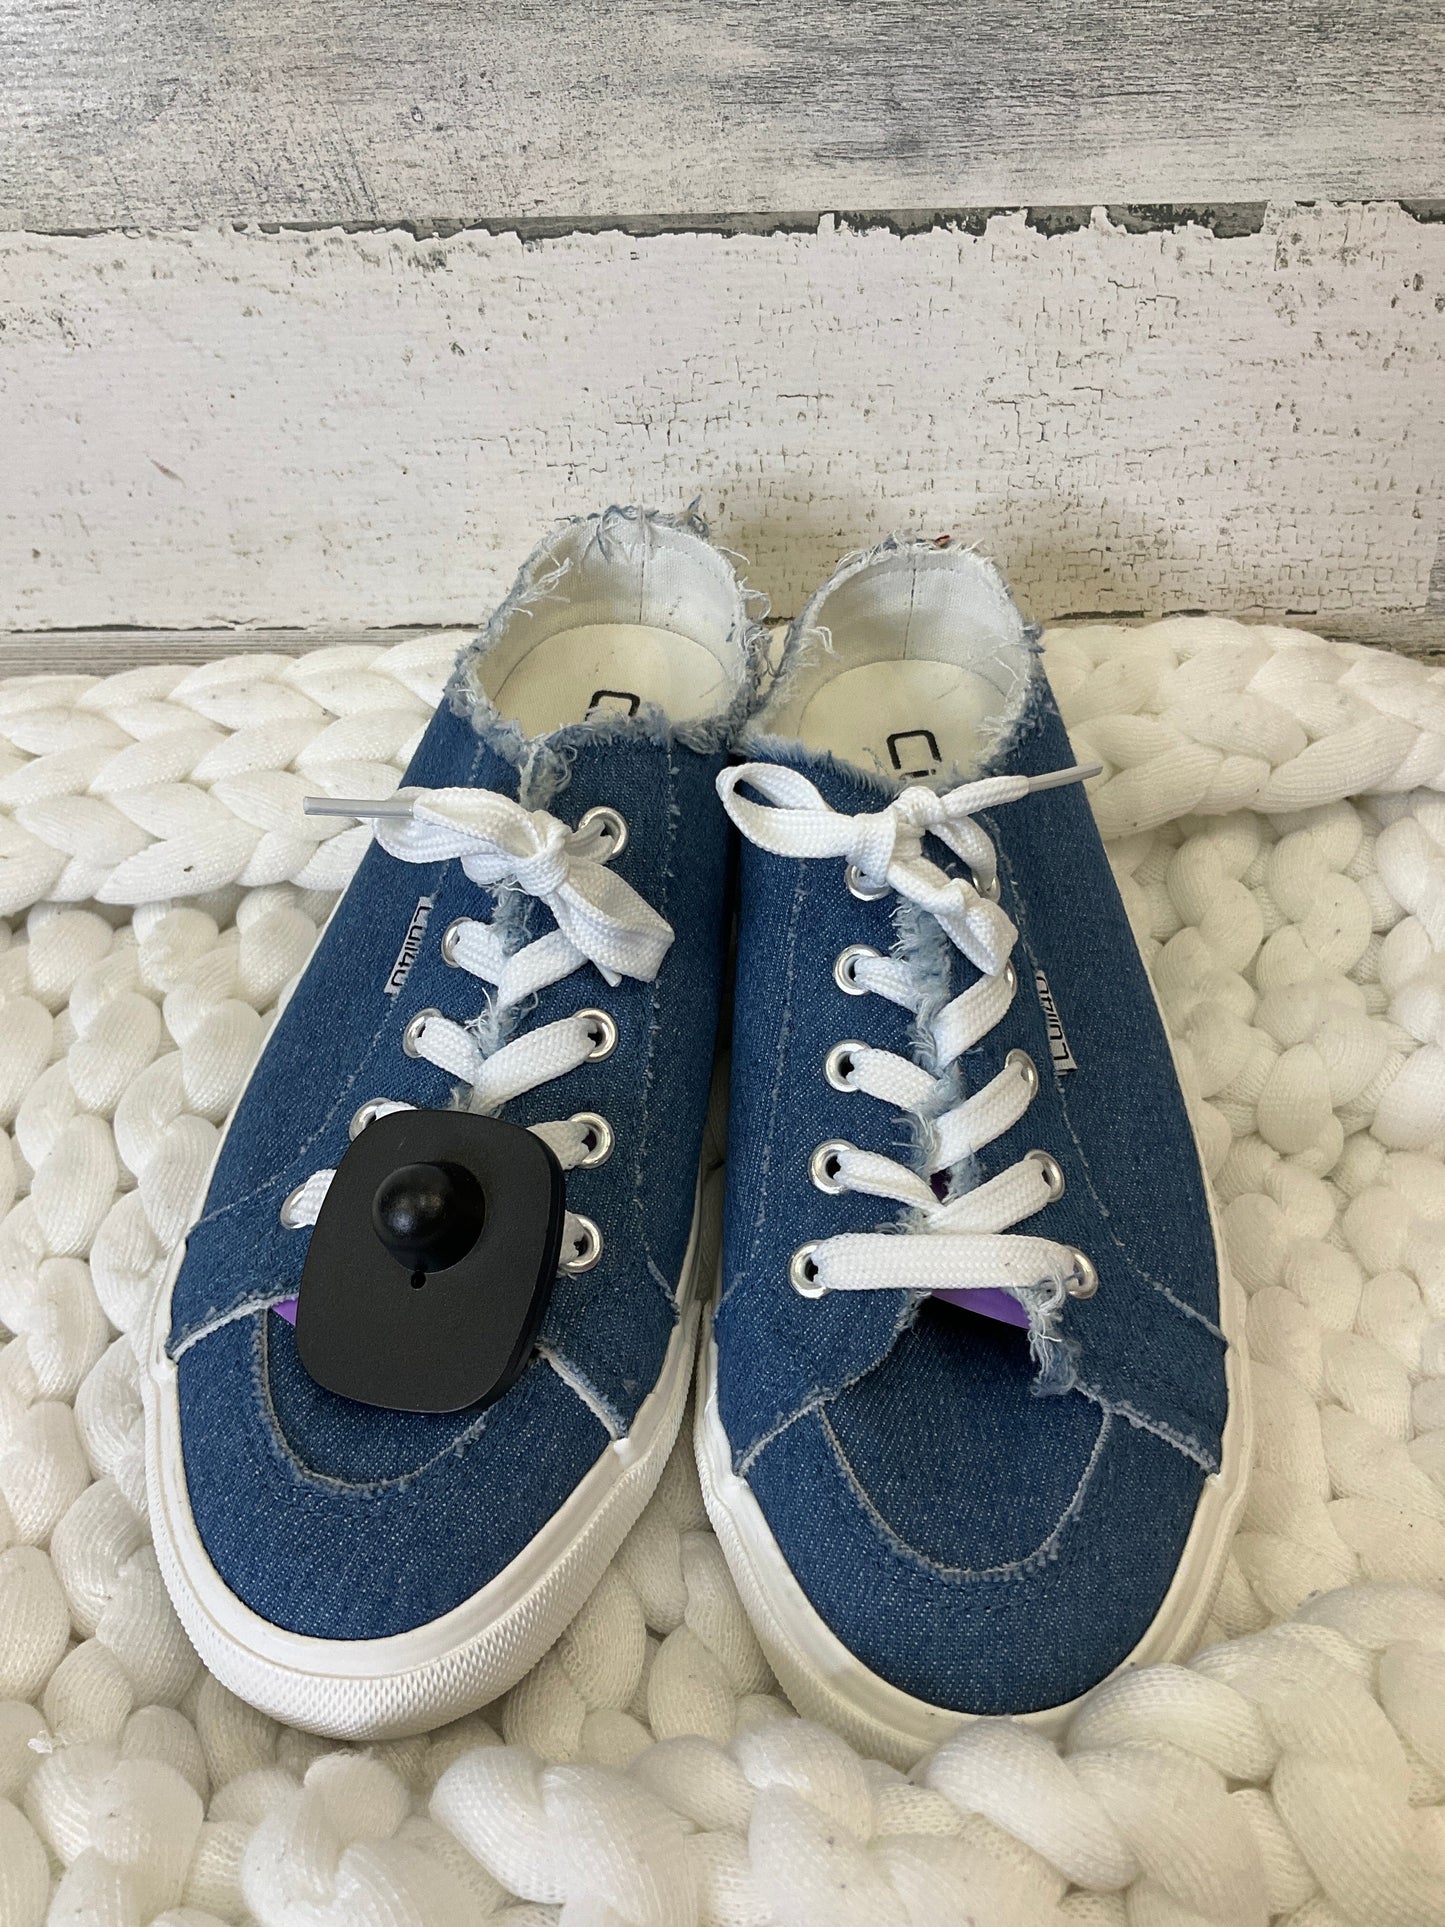 Blue Denim Shoes Athletic Clothes Mentor, Size 8